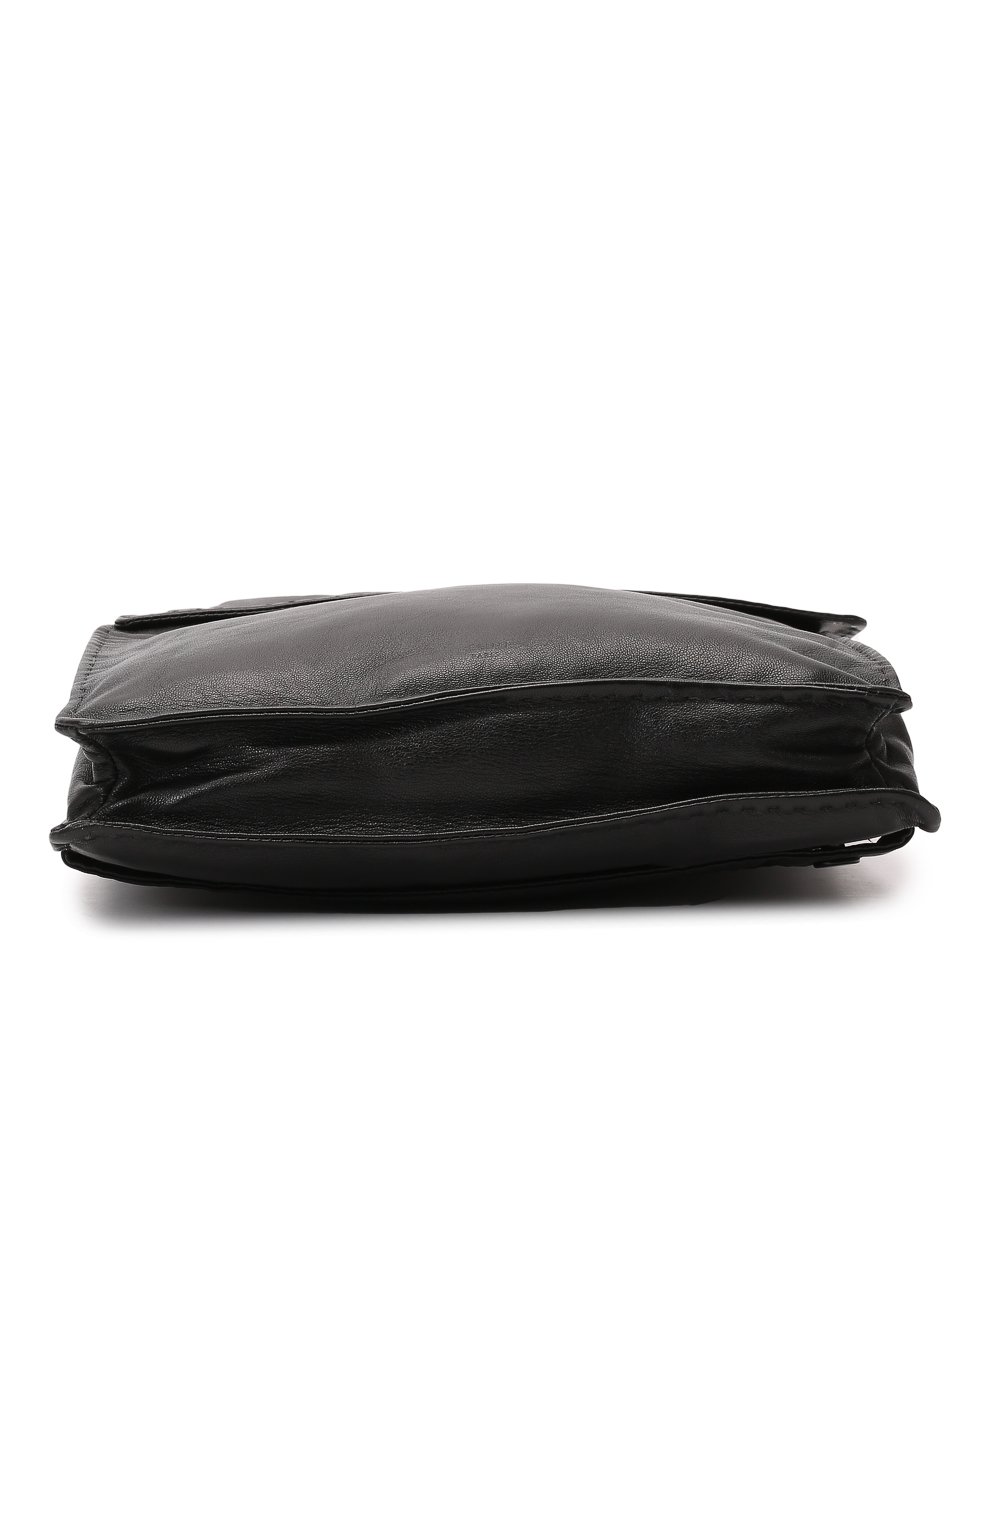 Рюкзак Large Croissant | Celine | Чёрный - 5